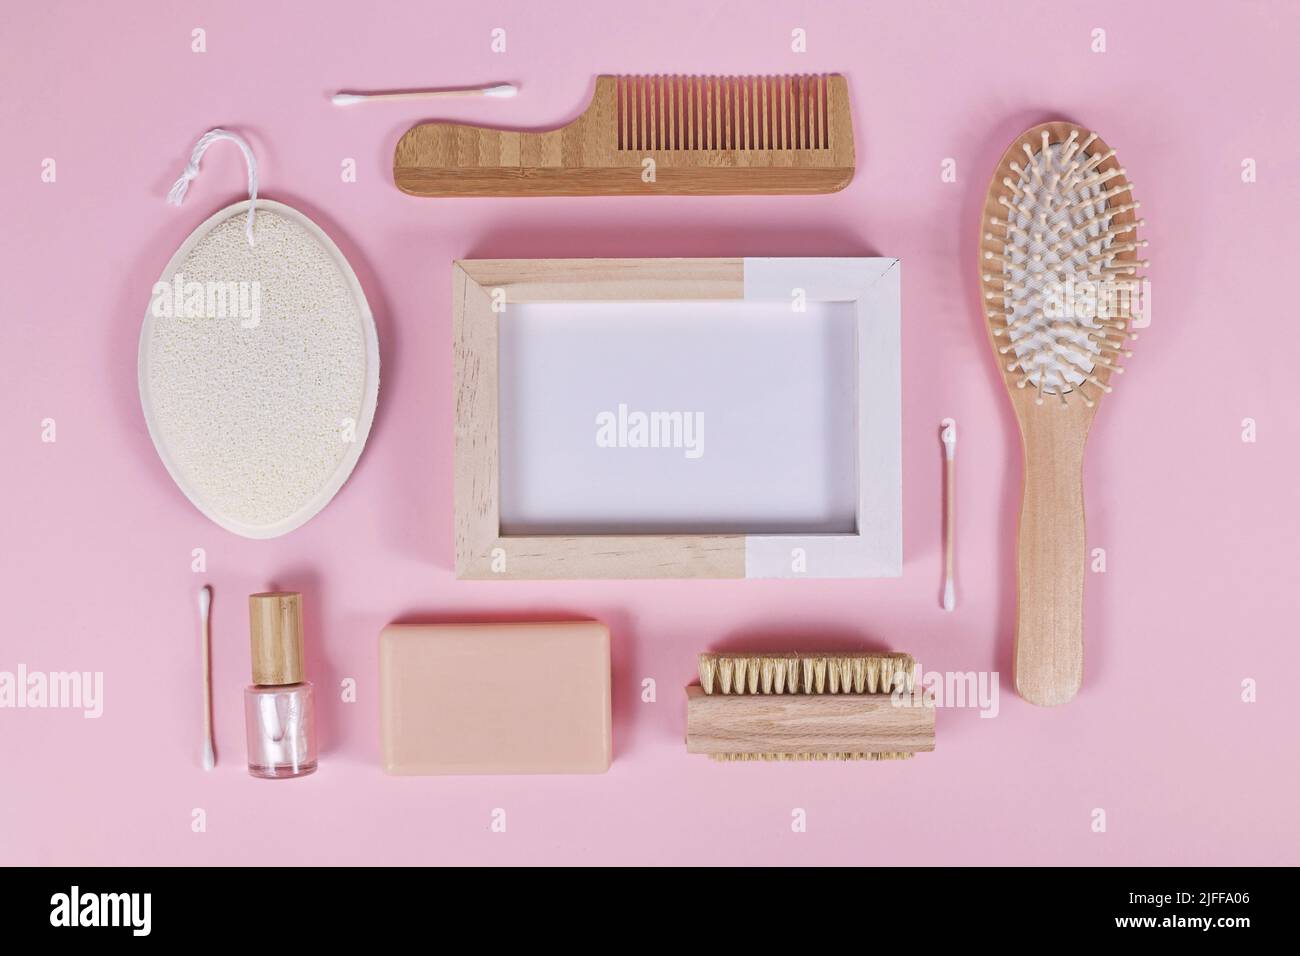 Umweltfreundliche Schönheits- und Hygieneprodukte aus Holz wie Kamm und Seife auf rosa Hintergrund angeordnet Stockfoto